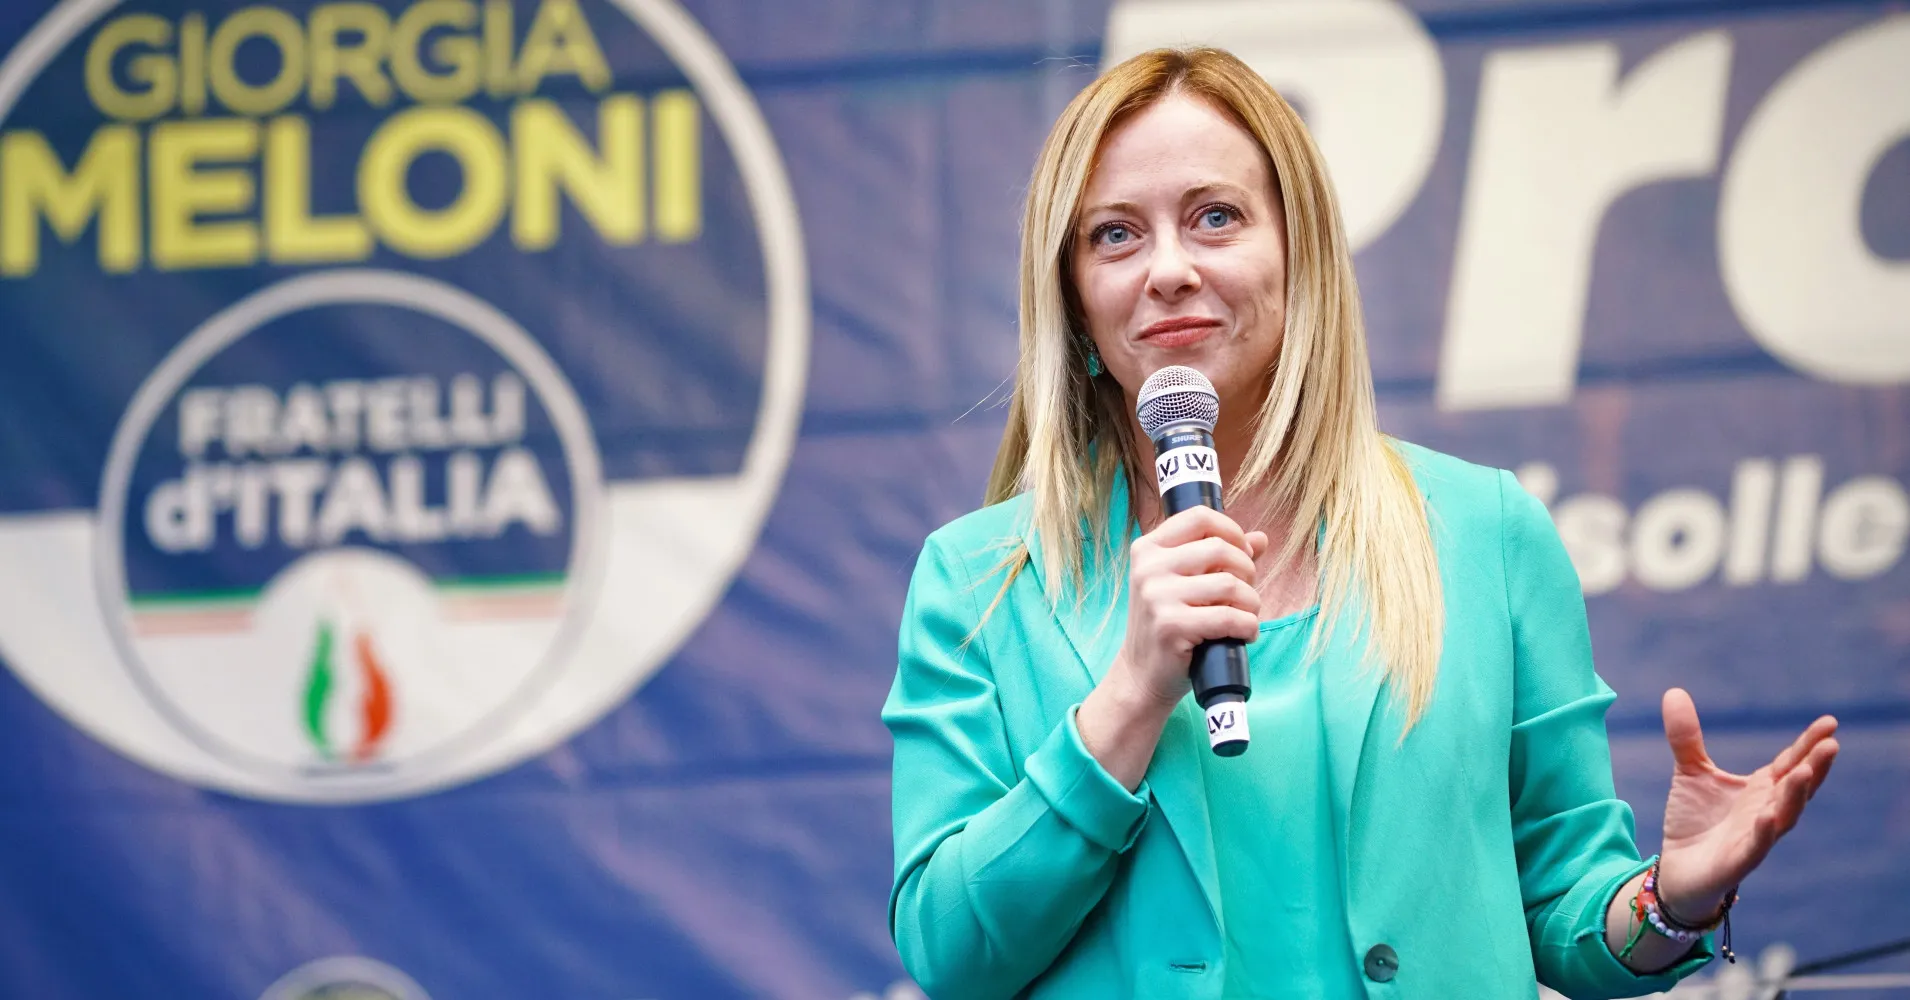 Giorgia Meloni è pronta a governare.  Le elezioni italiane sono chiaramente dominate da alleanze di partito di destra